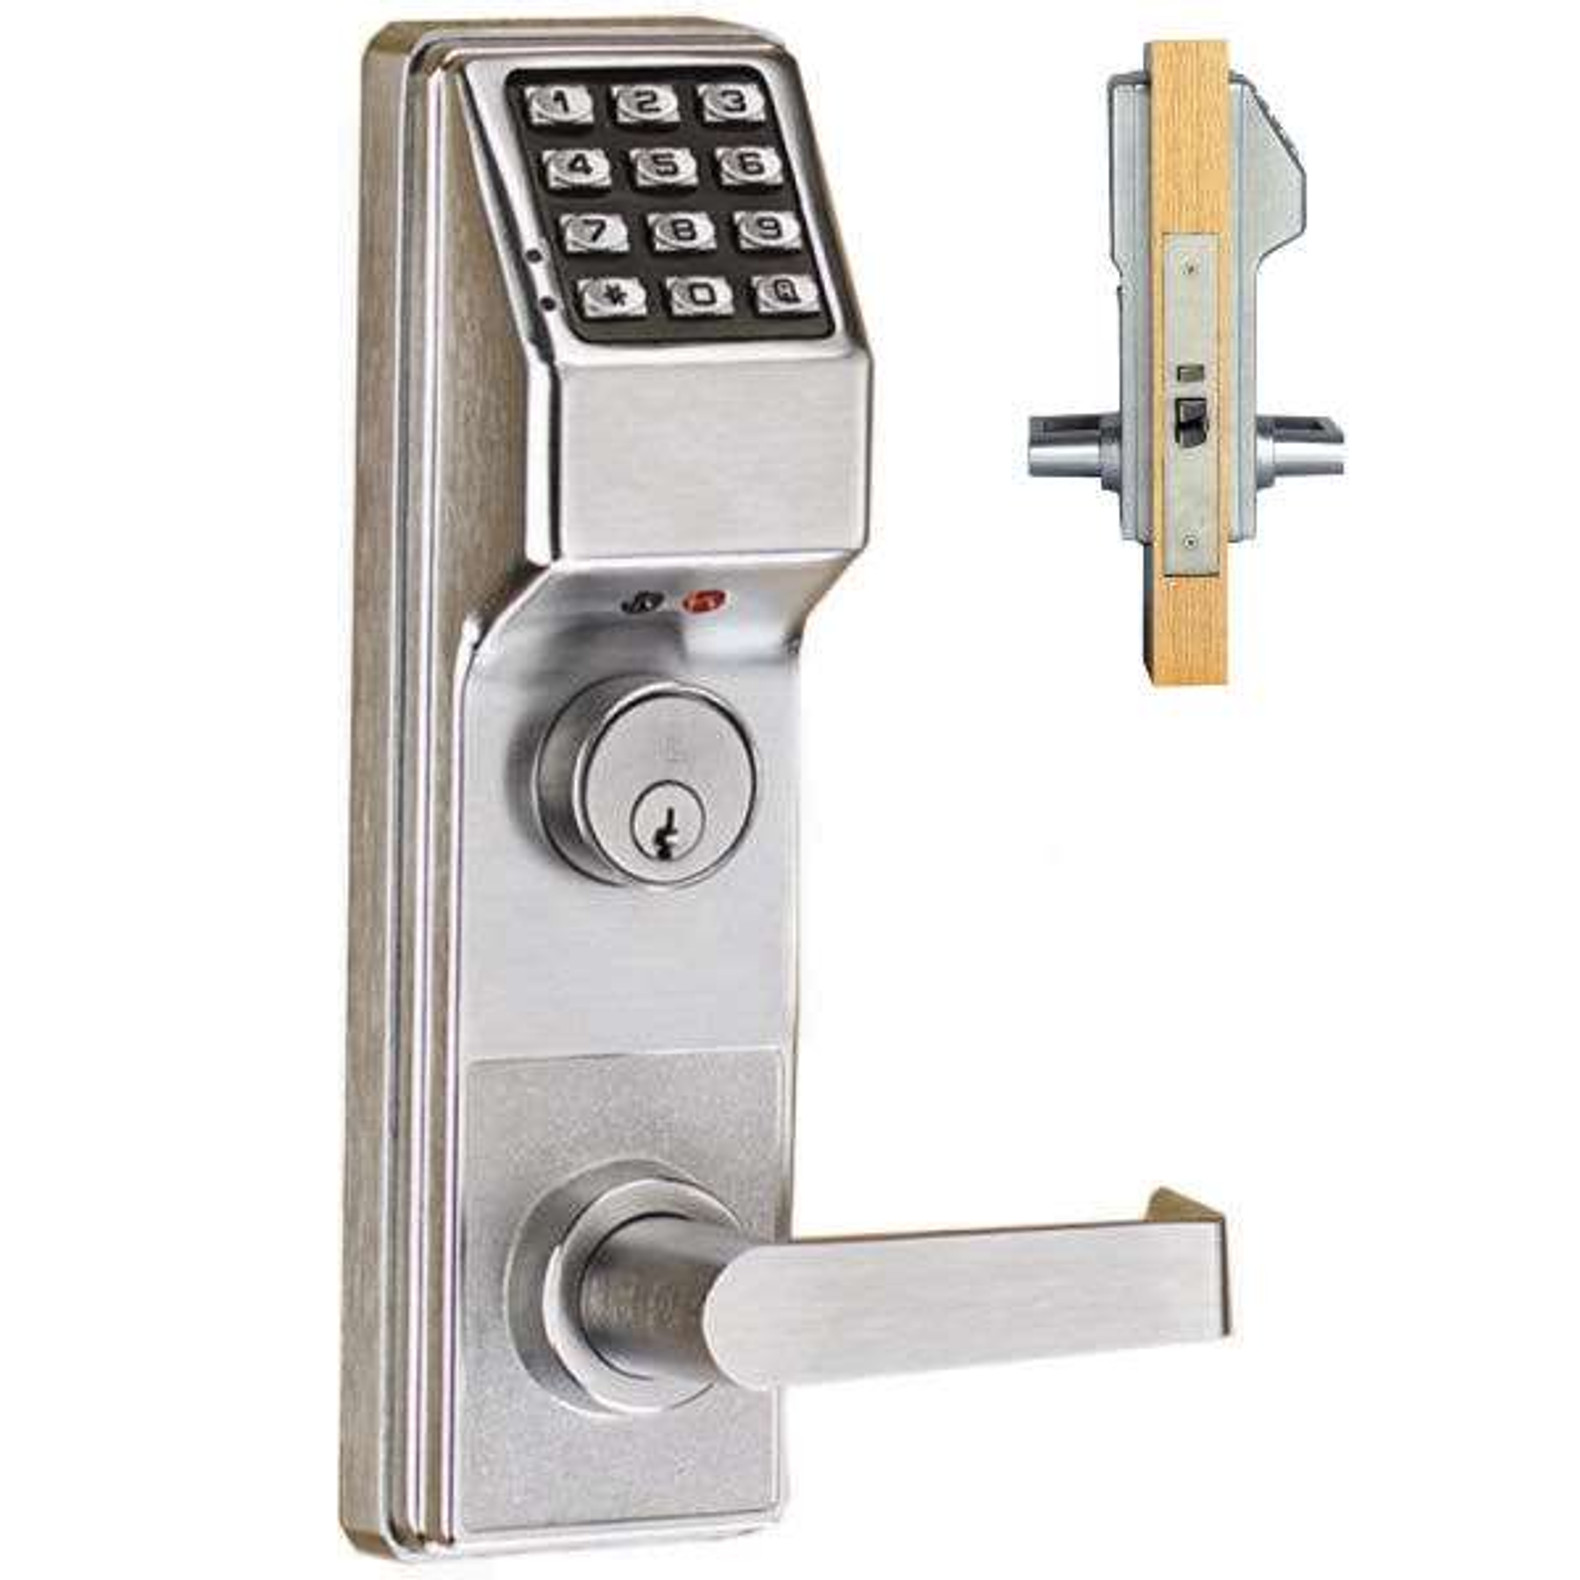 lock with alarm